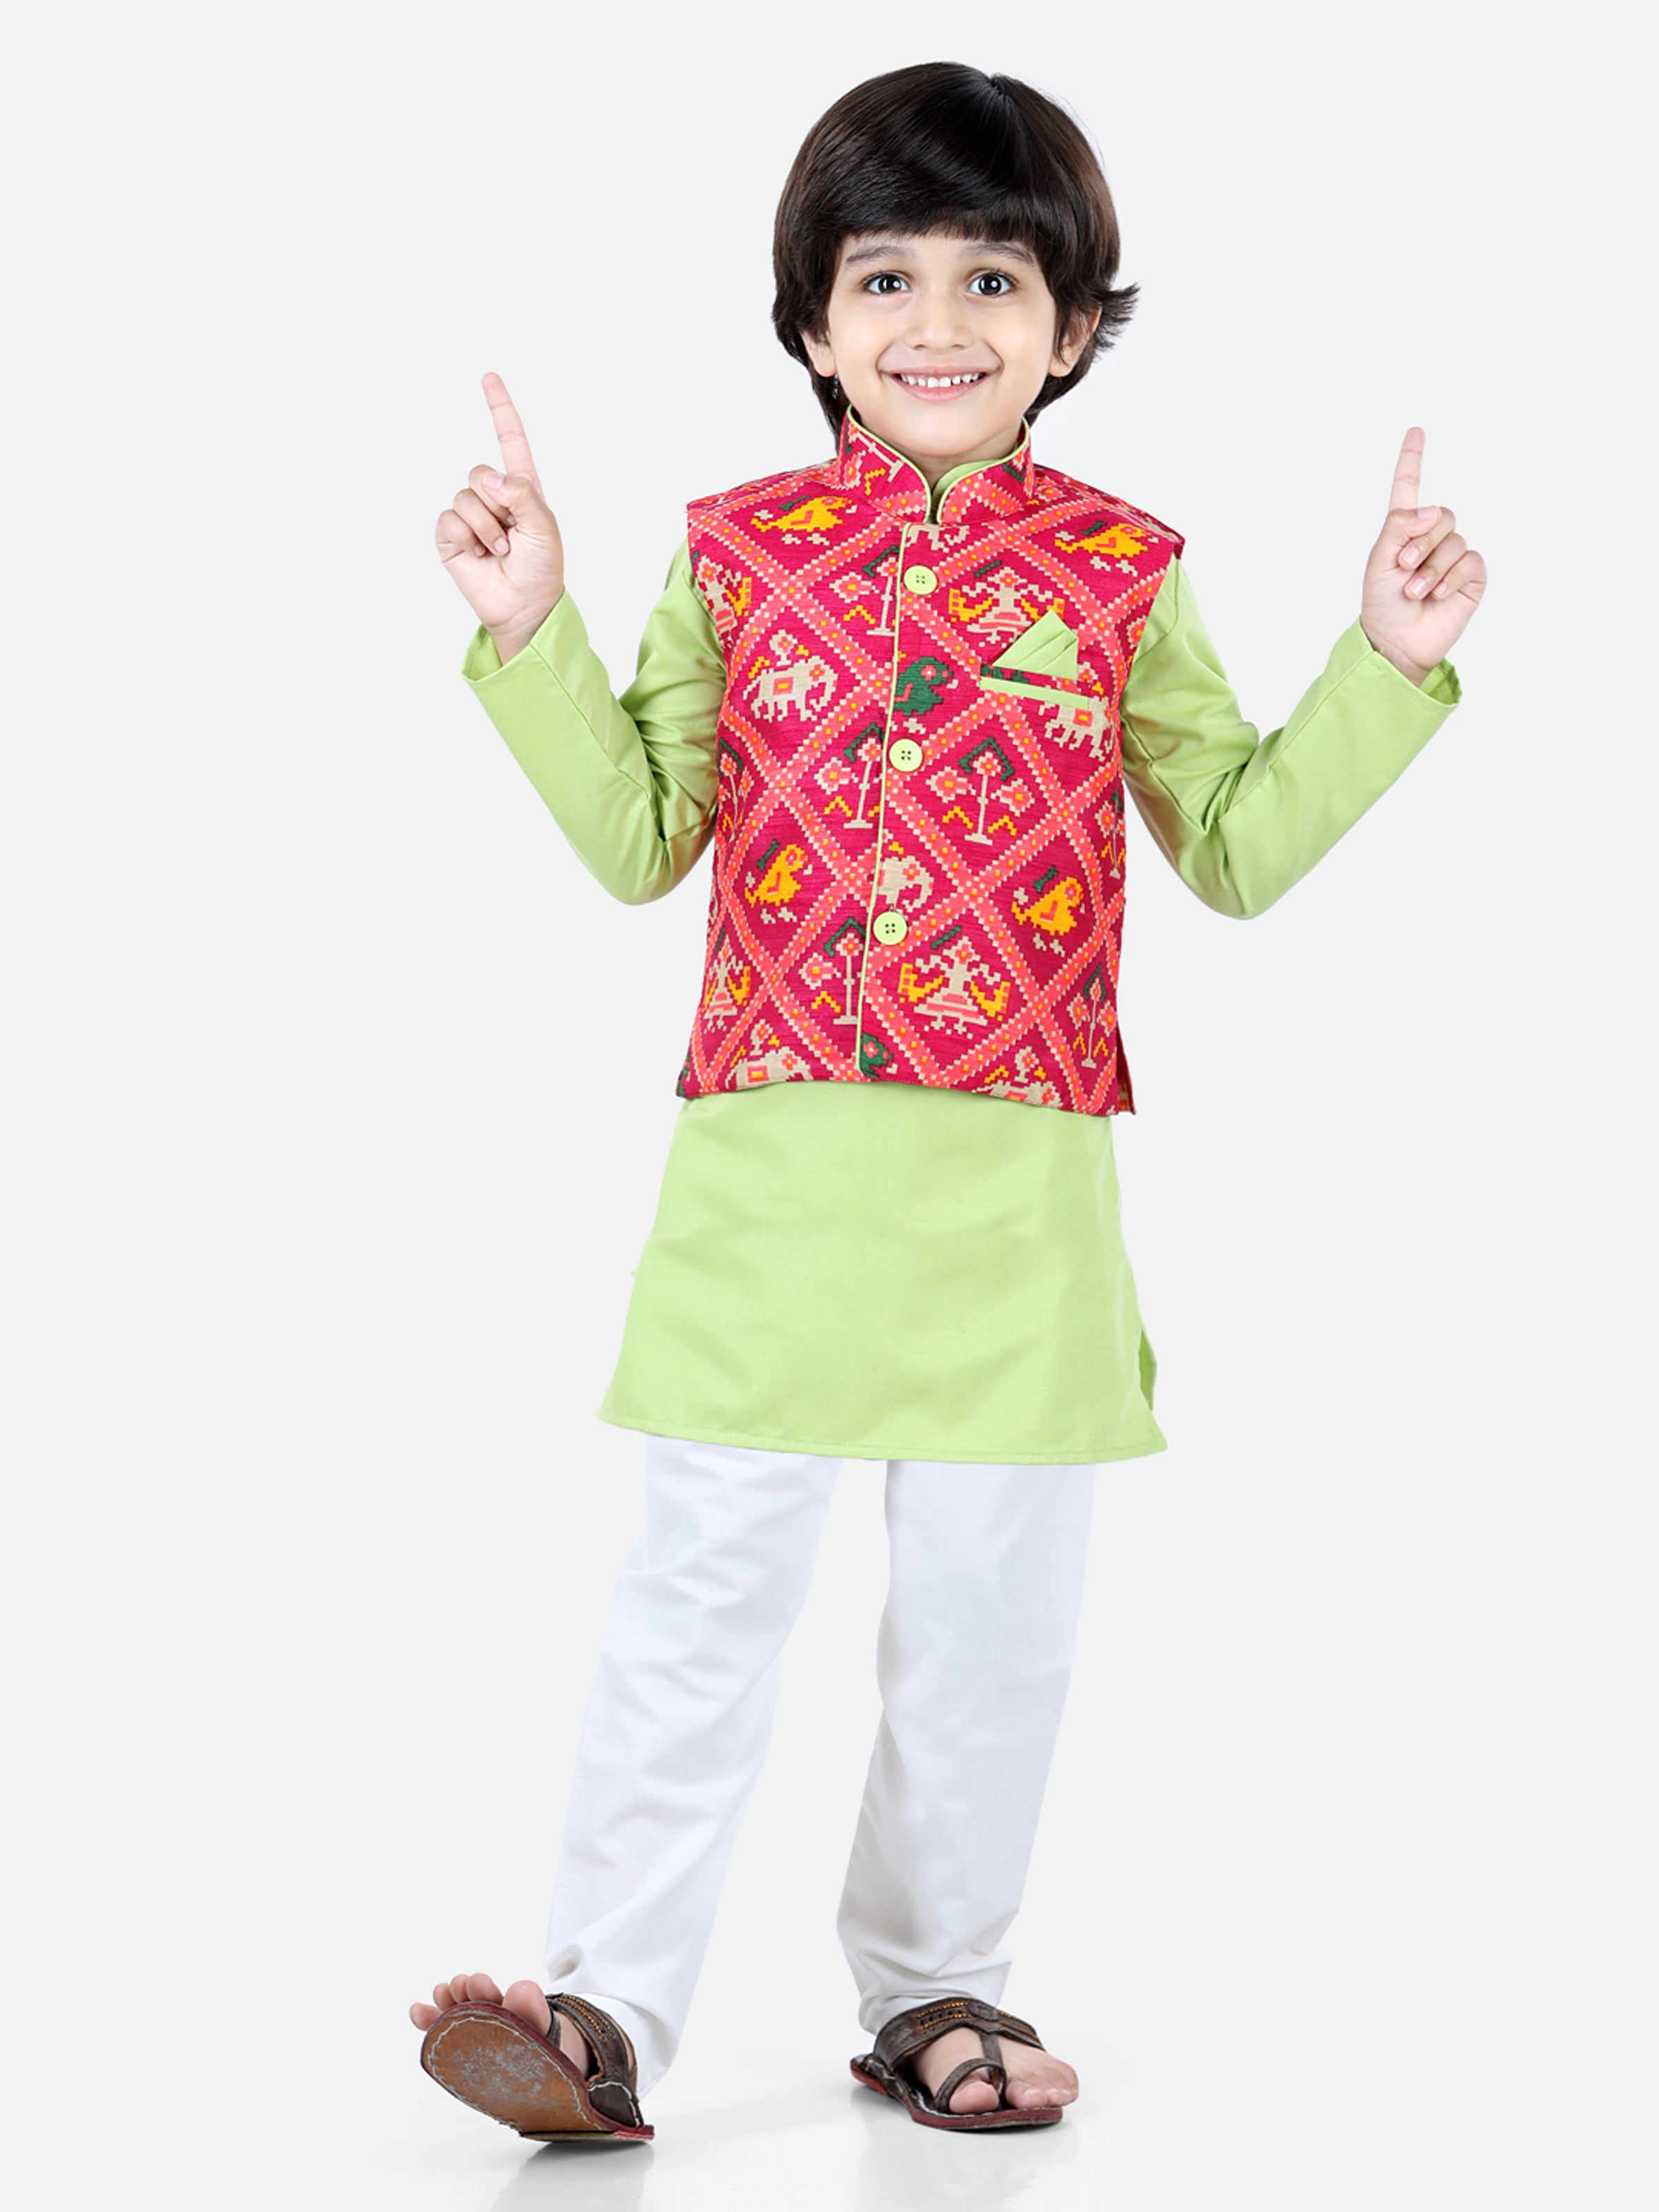 BownBee Sibling set of Patan Patola Jacket Kurta Pajama and Patch Top and Dhoti-Green